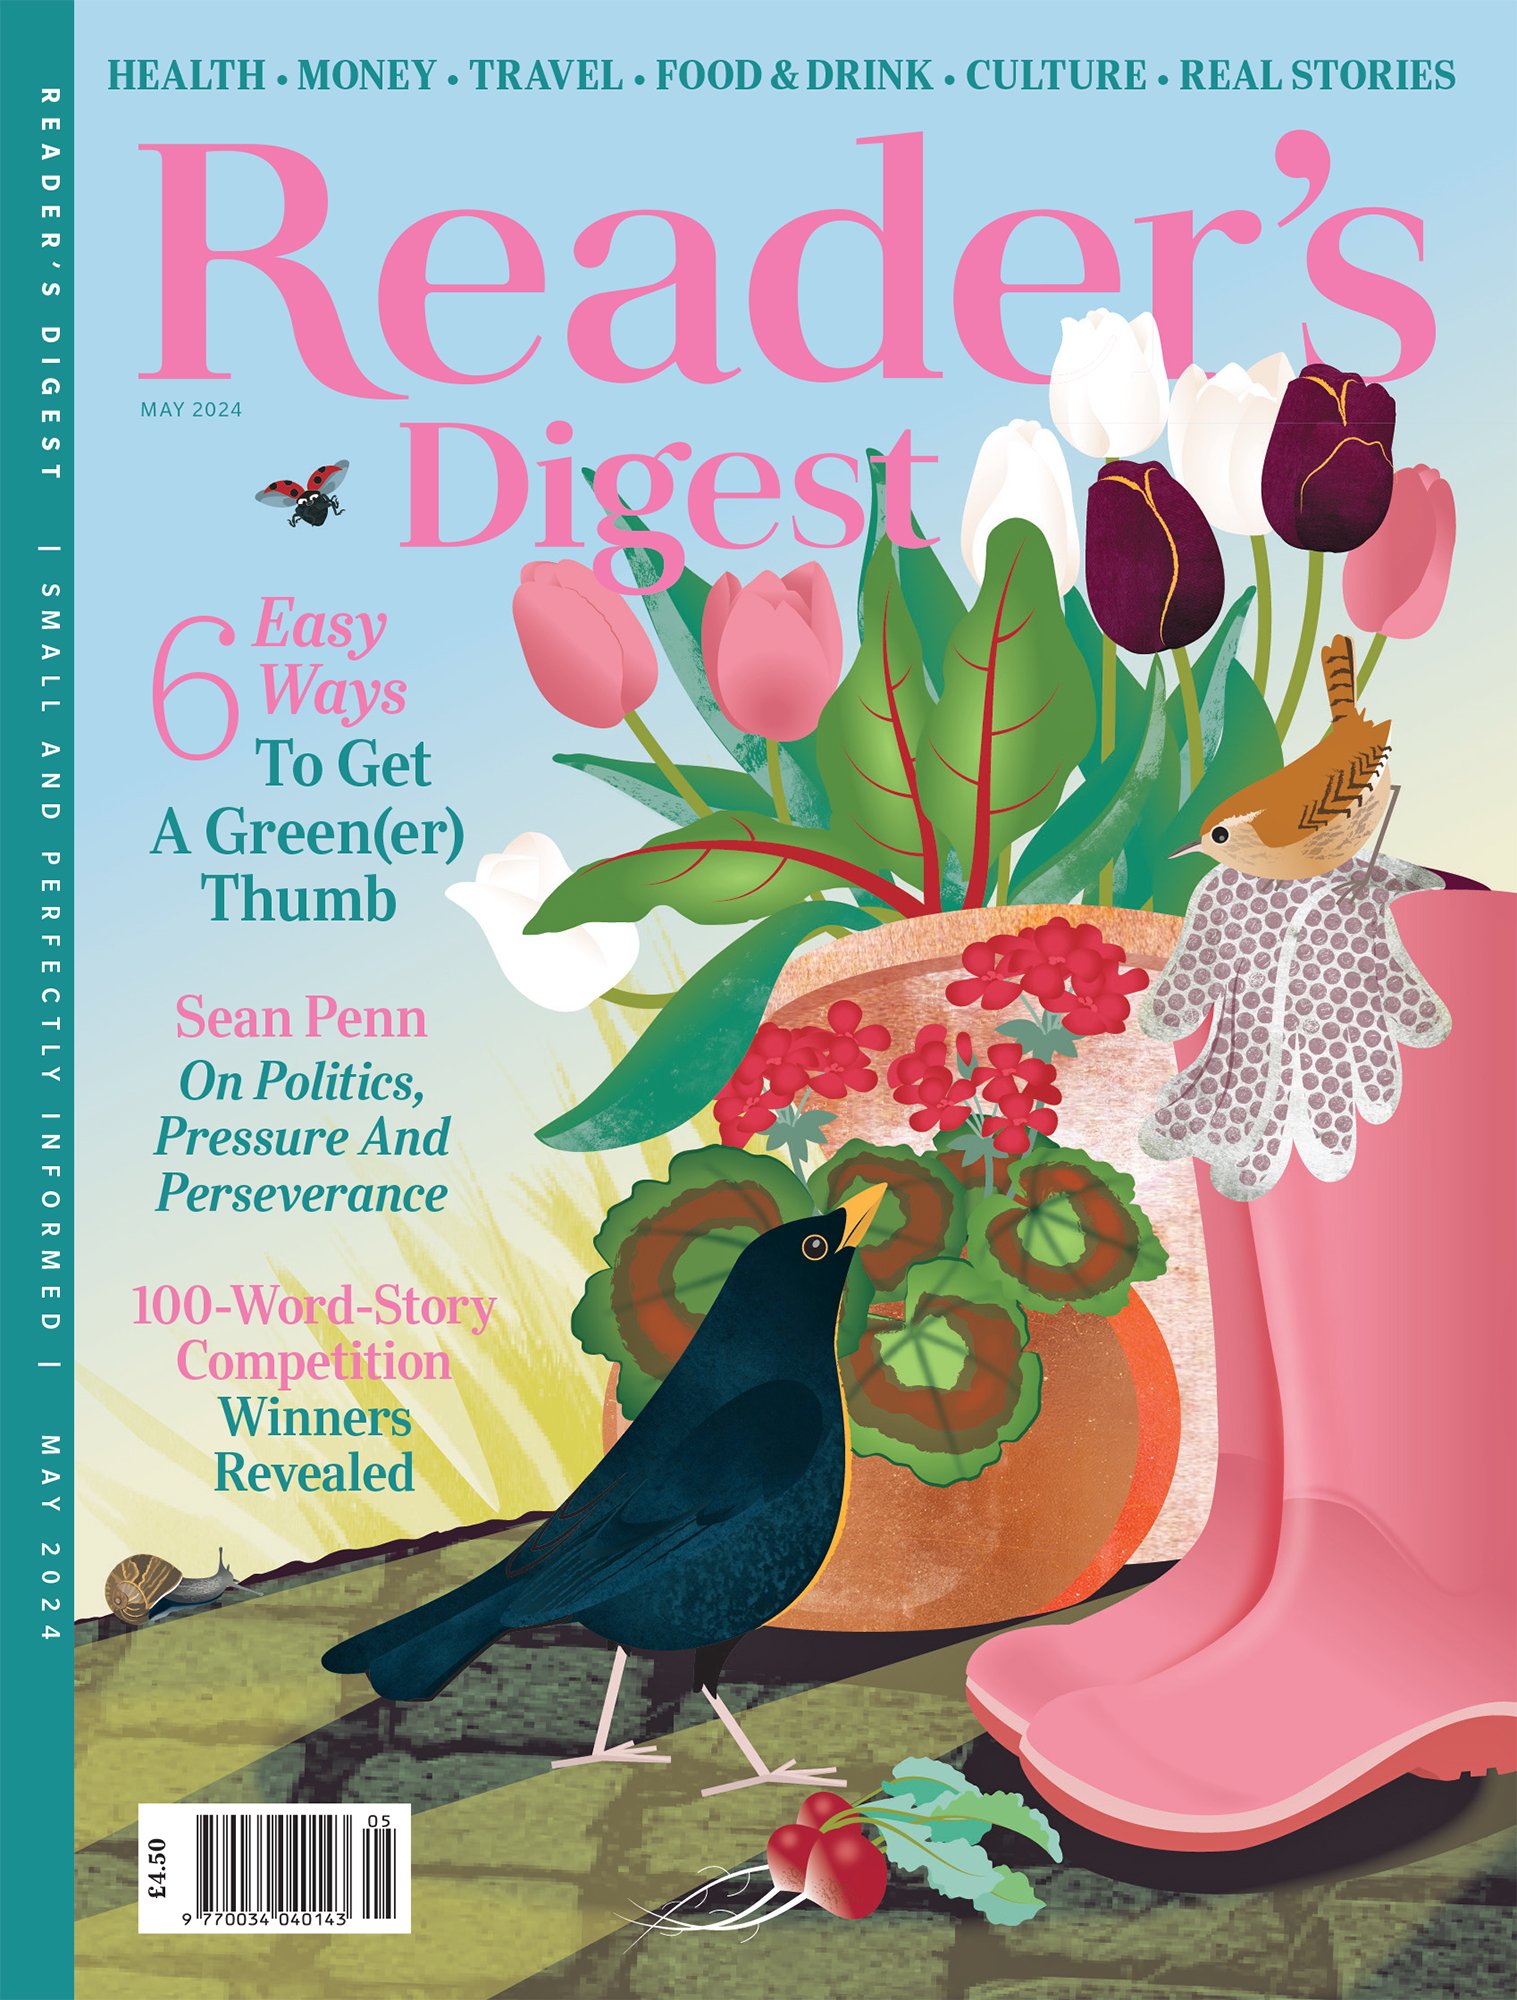 Cover art for Reader's Digest Magazine by Rachel Hudson Illustration.jpg